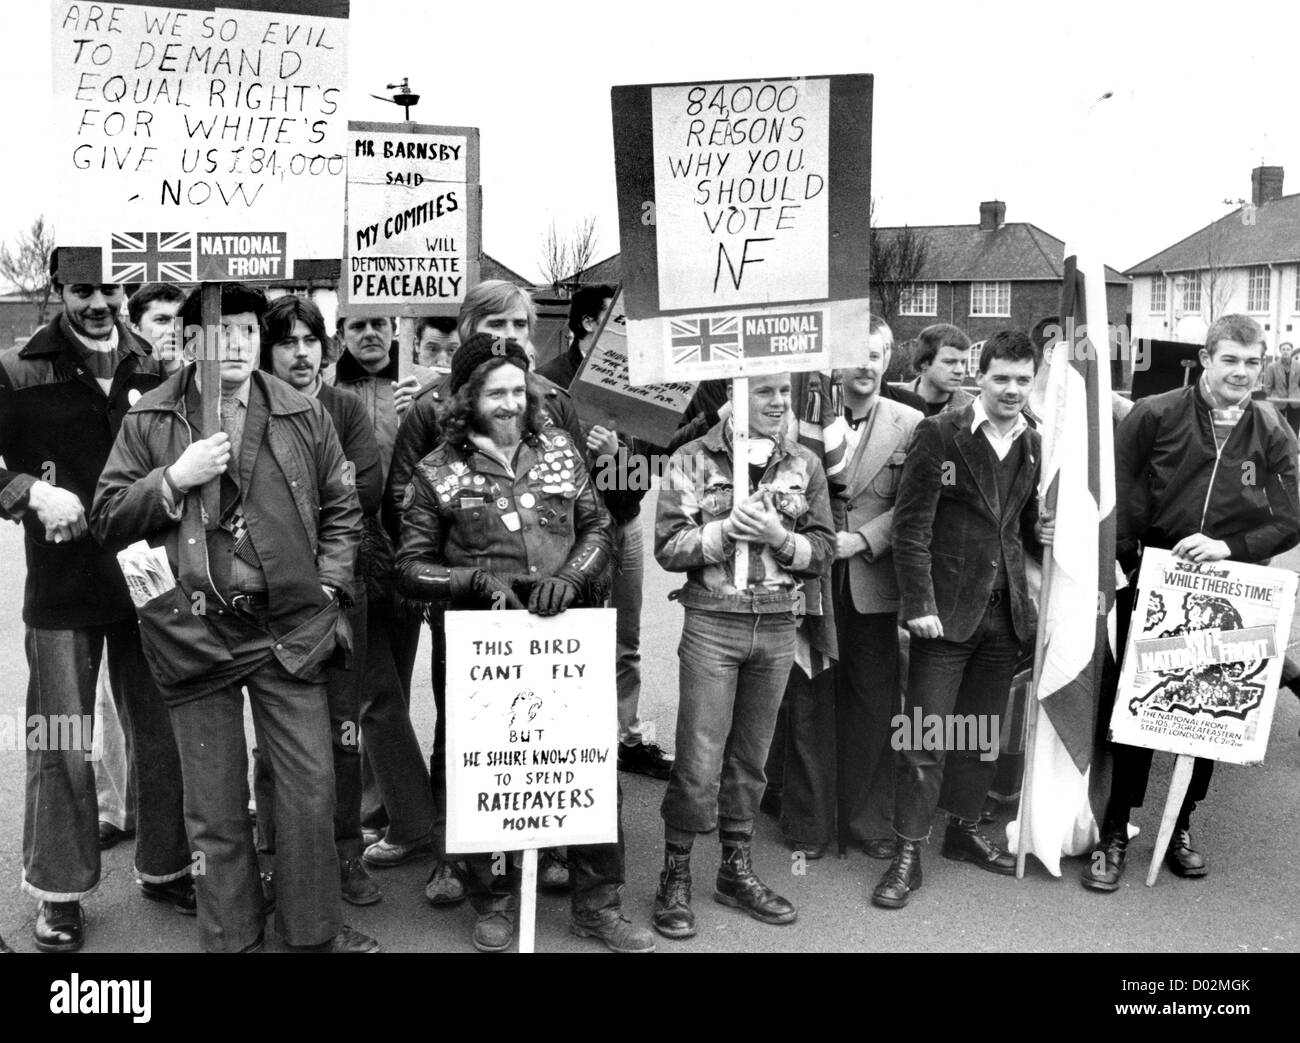 National Front march in Wolverhampton 1981. Großbritannien Britisch England Englisch Politik der 1980er Jahre politische Kundgebung rechtsextreme Arbeiterstraßenstraßen protestieren gegen Großbritannien. BILD VON DAVID BAGNALL Stockfoto